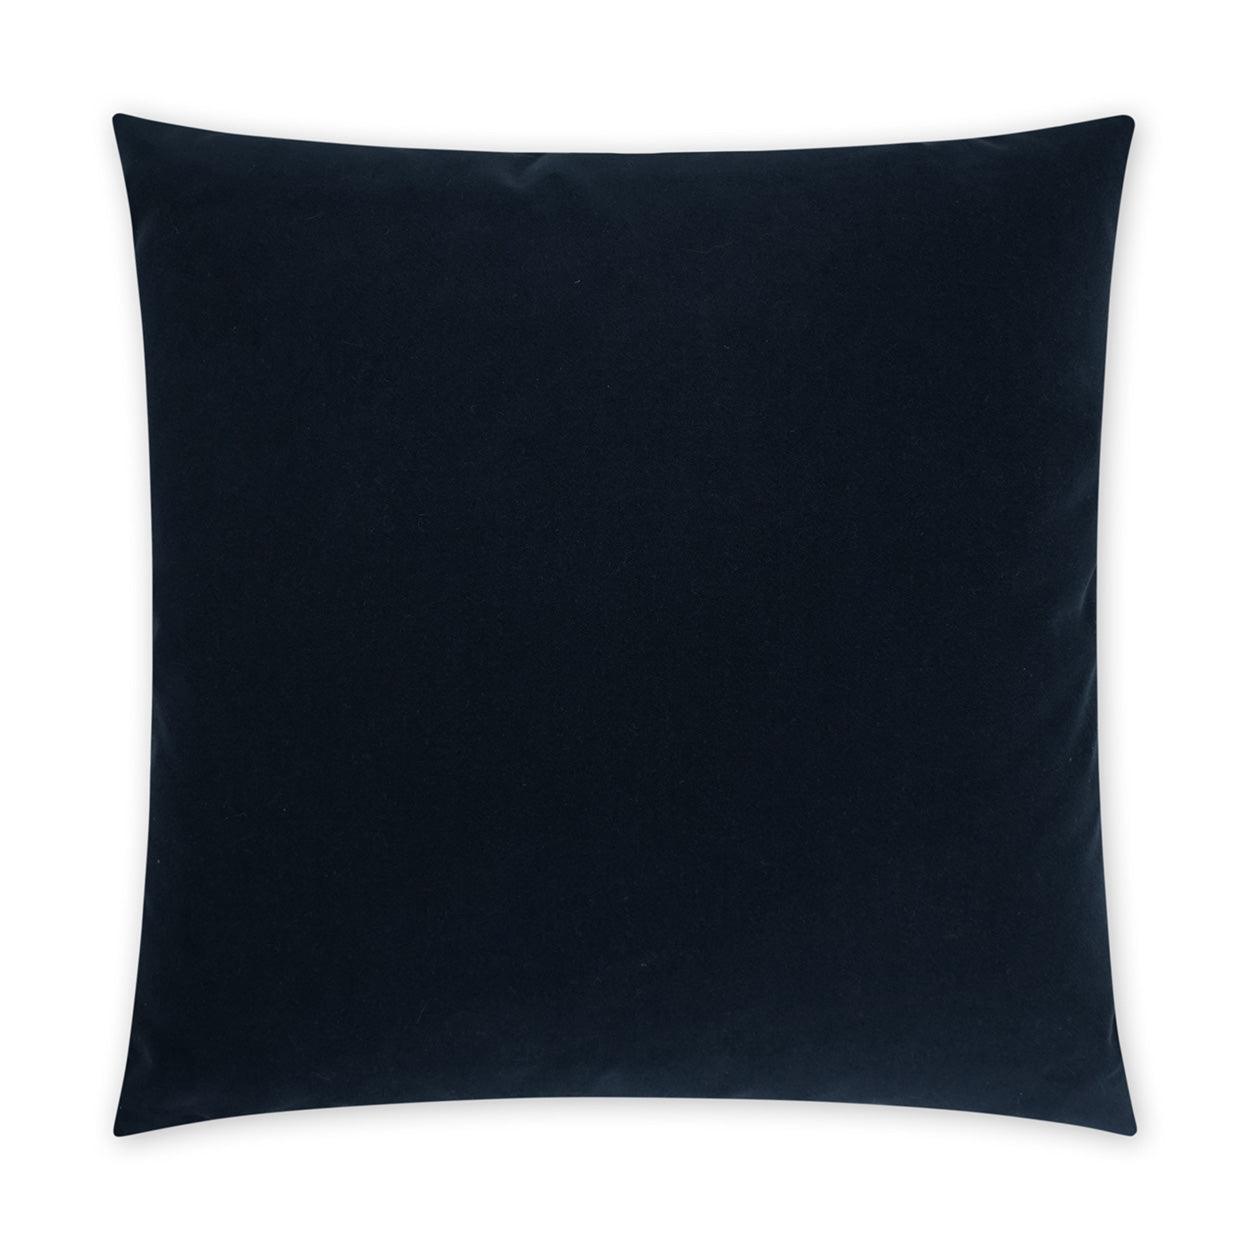 LOOMLAN Outdoor - Outdoor Sundance Pillow - Navy - Outdoor Pillows